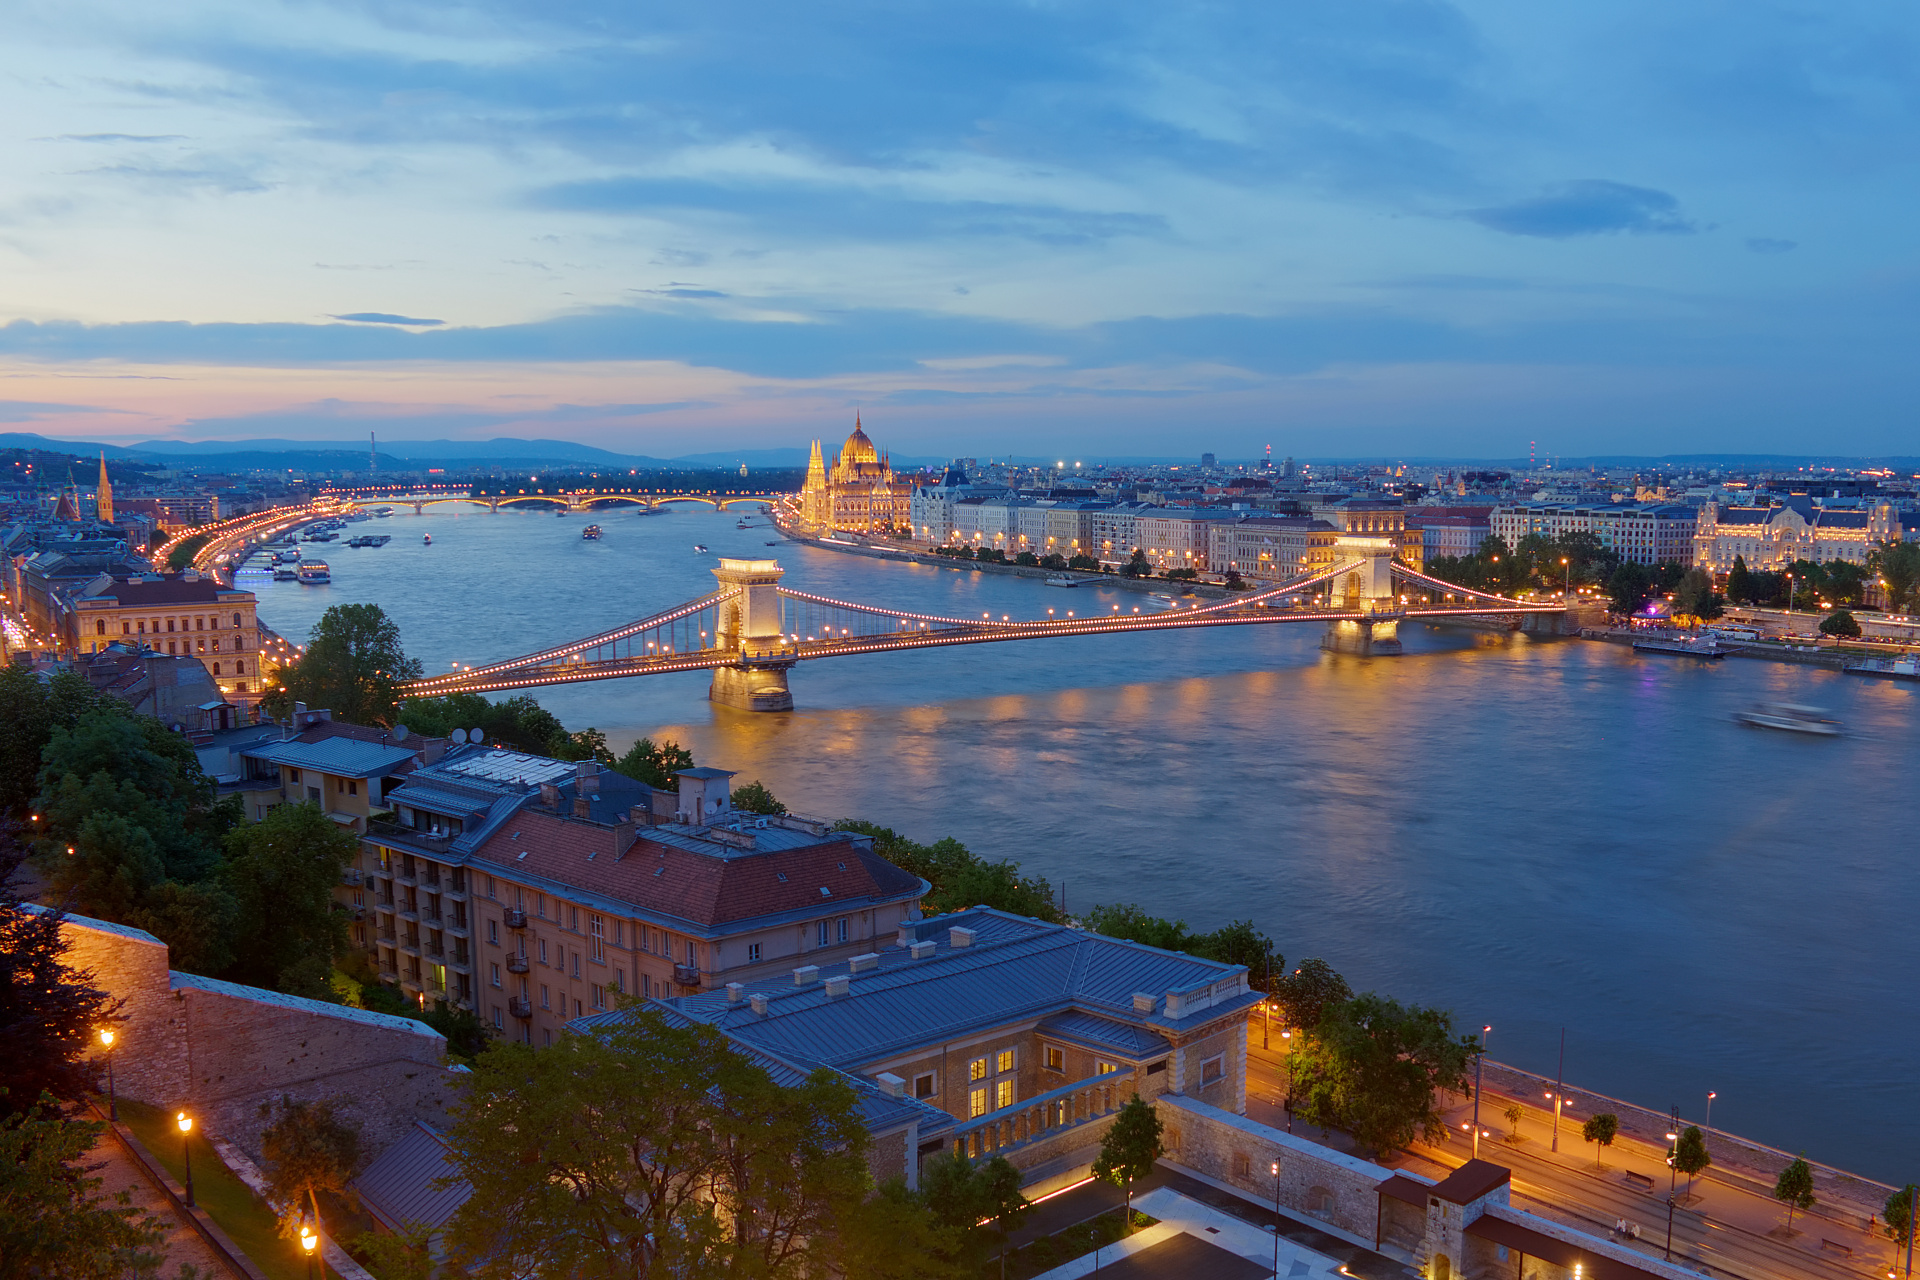 Dunaj i Peszt z zamku w Budzie (Podróże » Budapeszt » Budapeszt w nocy)